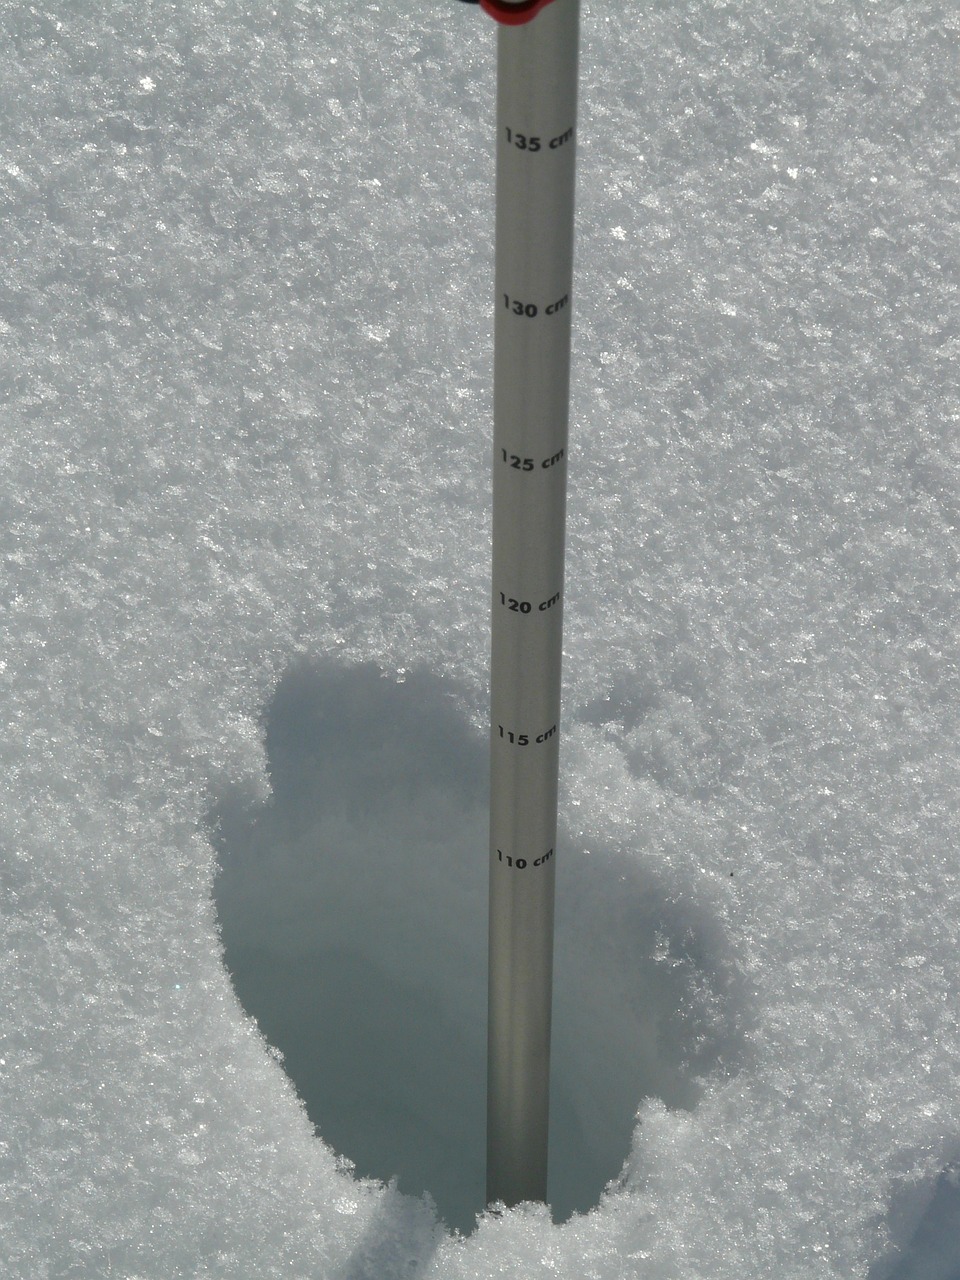 depth of snow measurement snow free photo